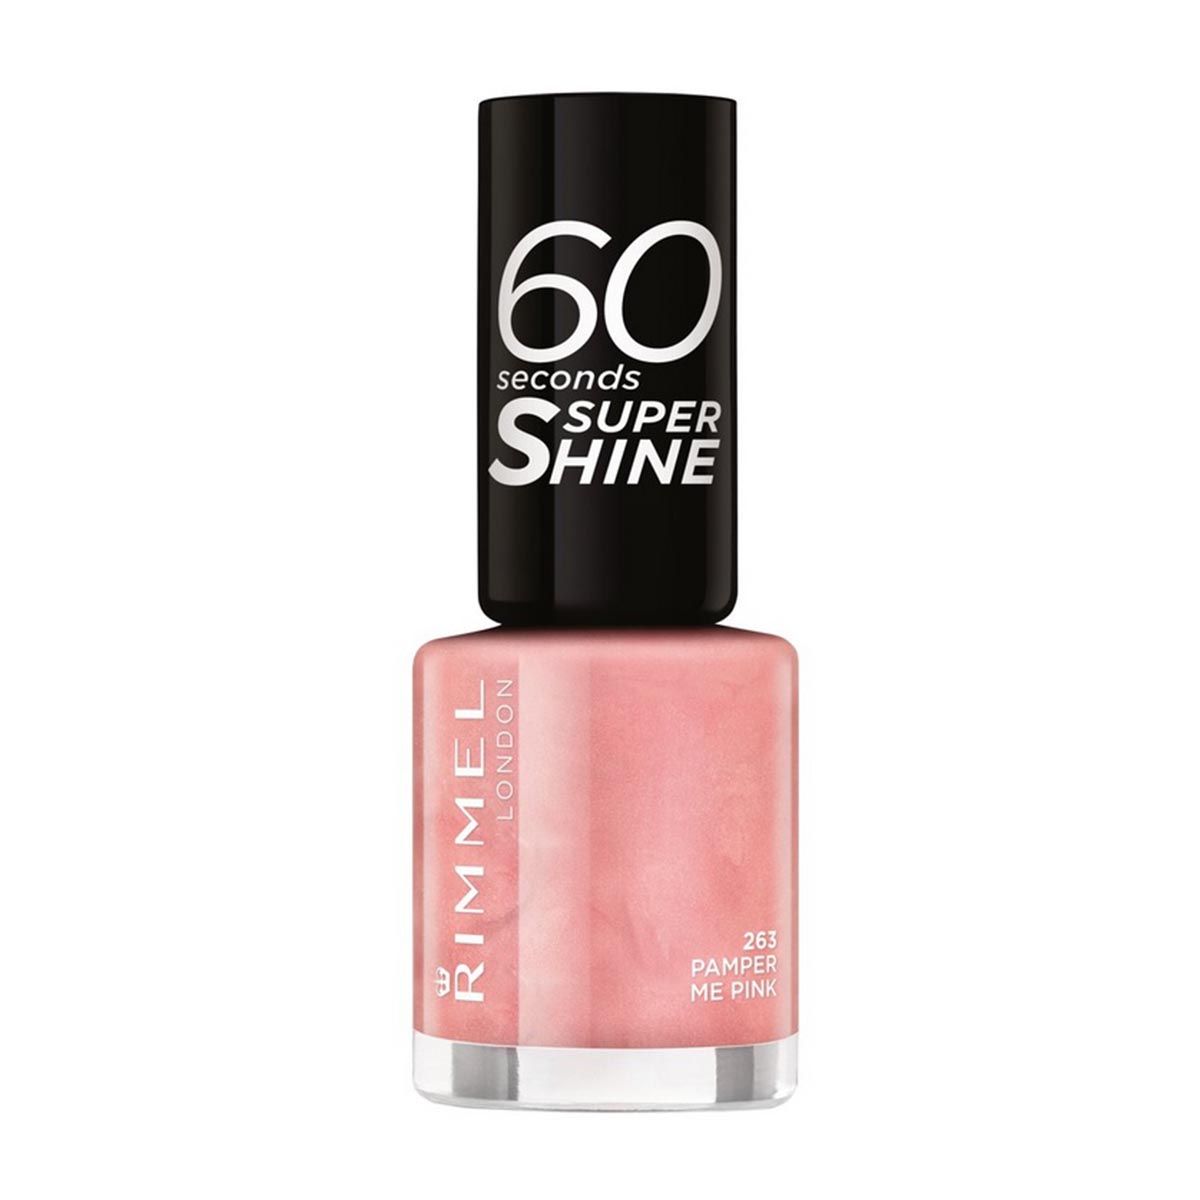 Rimmel 60 Seconds Super Shine körömlakk – 263 Pamper Me Pink